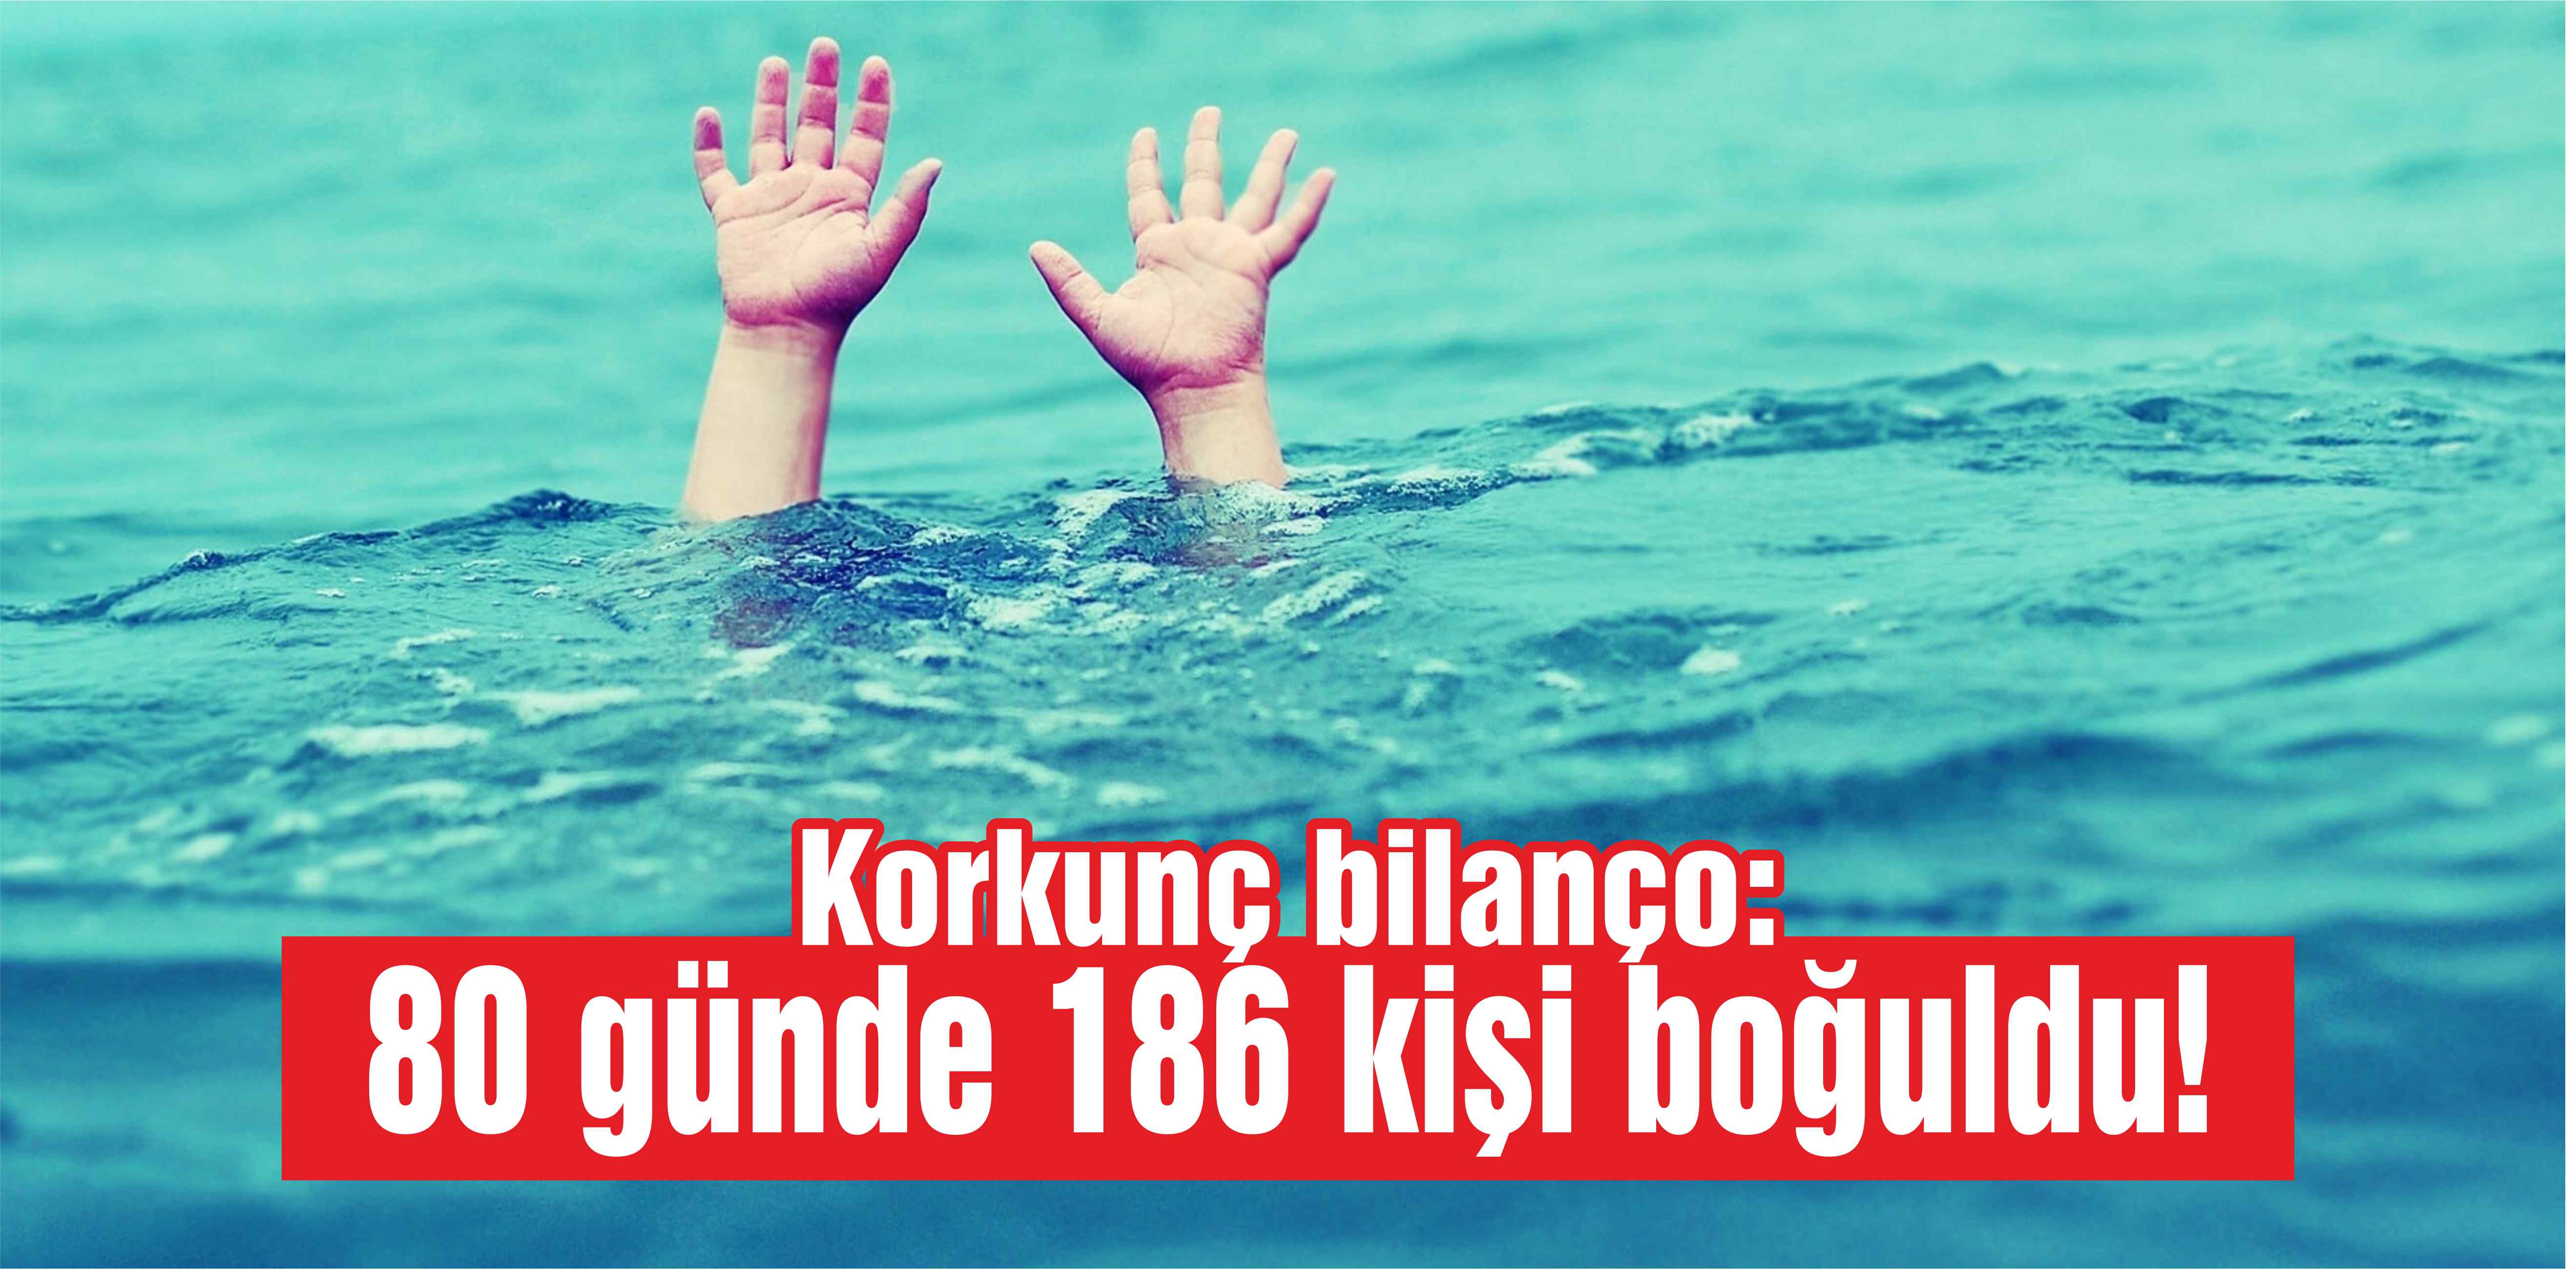 Korkunç bilanço: 80 günde 186 kişi boğuldu!